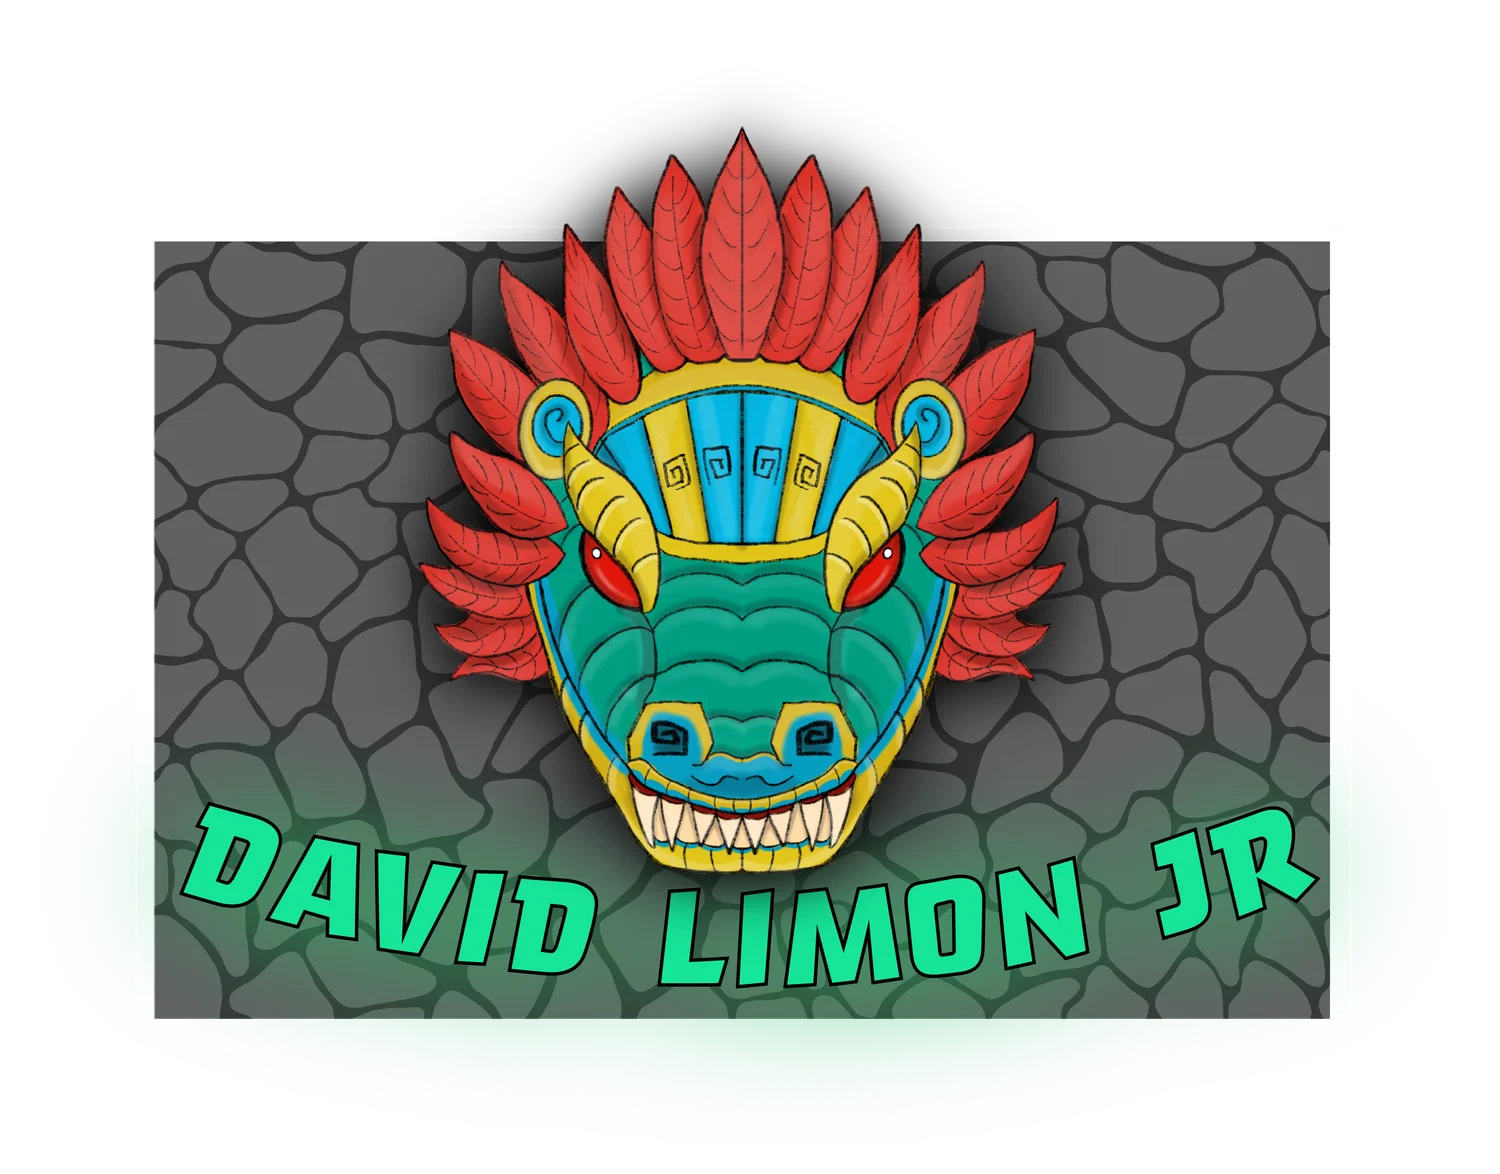 David Limon Jr.